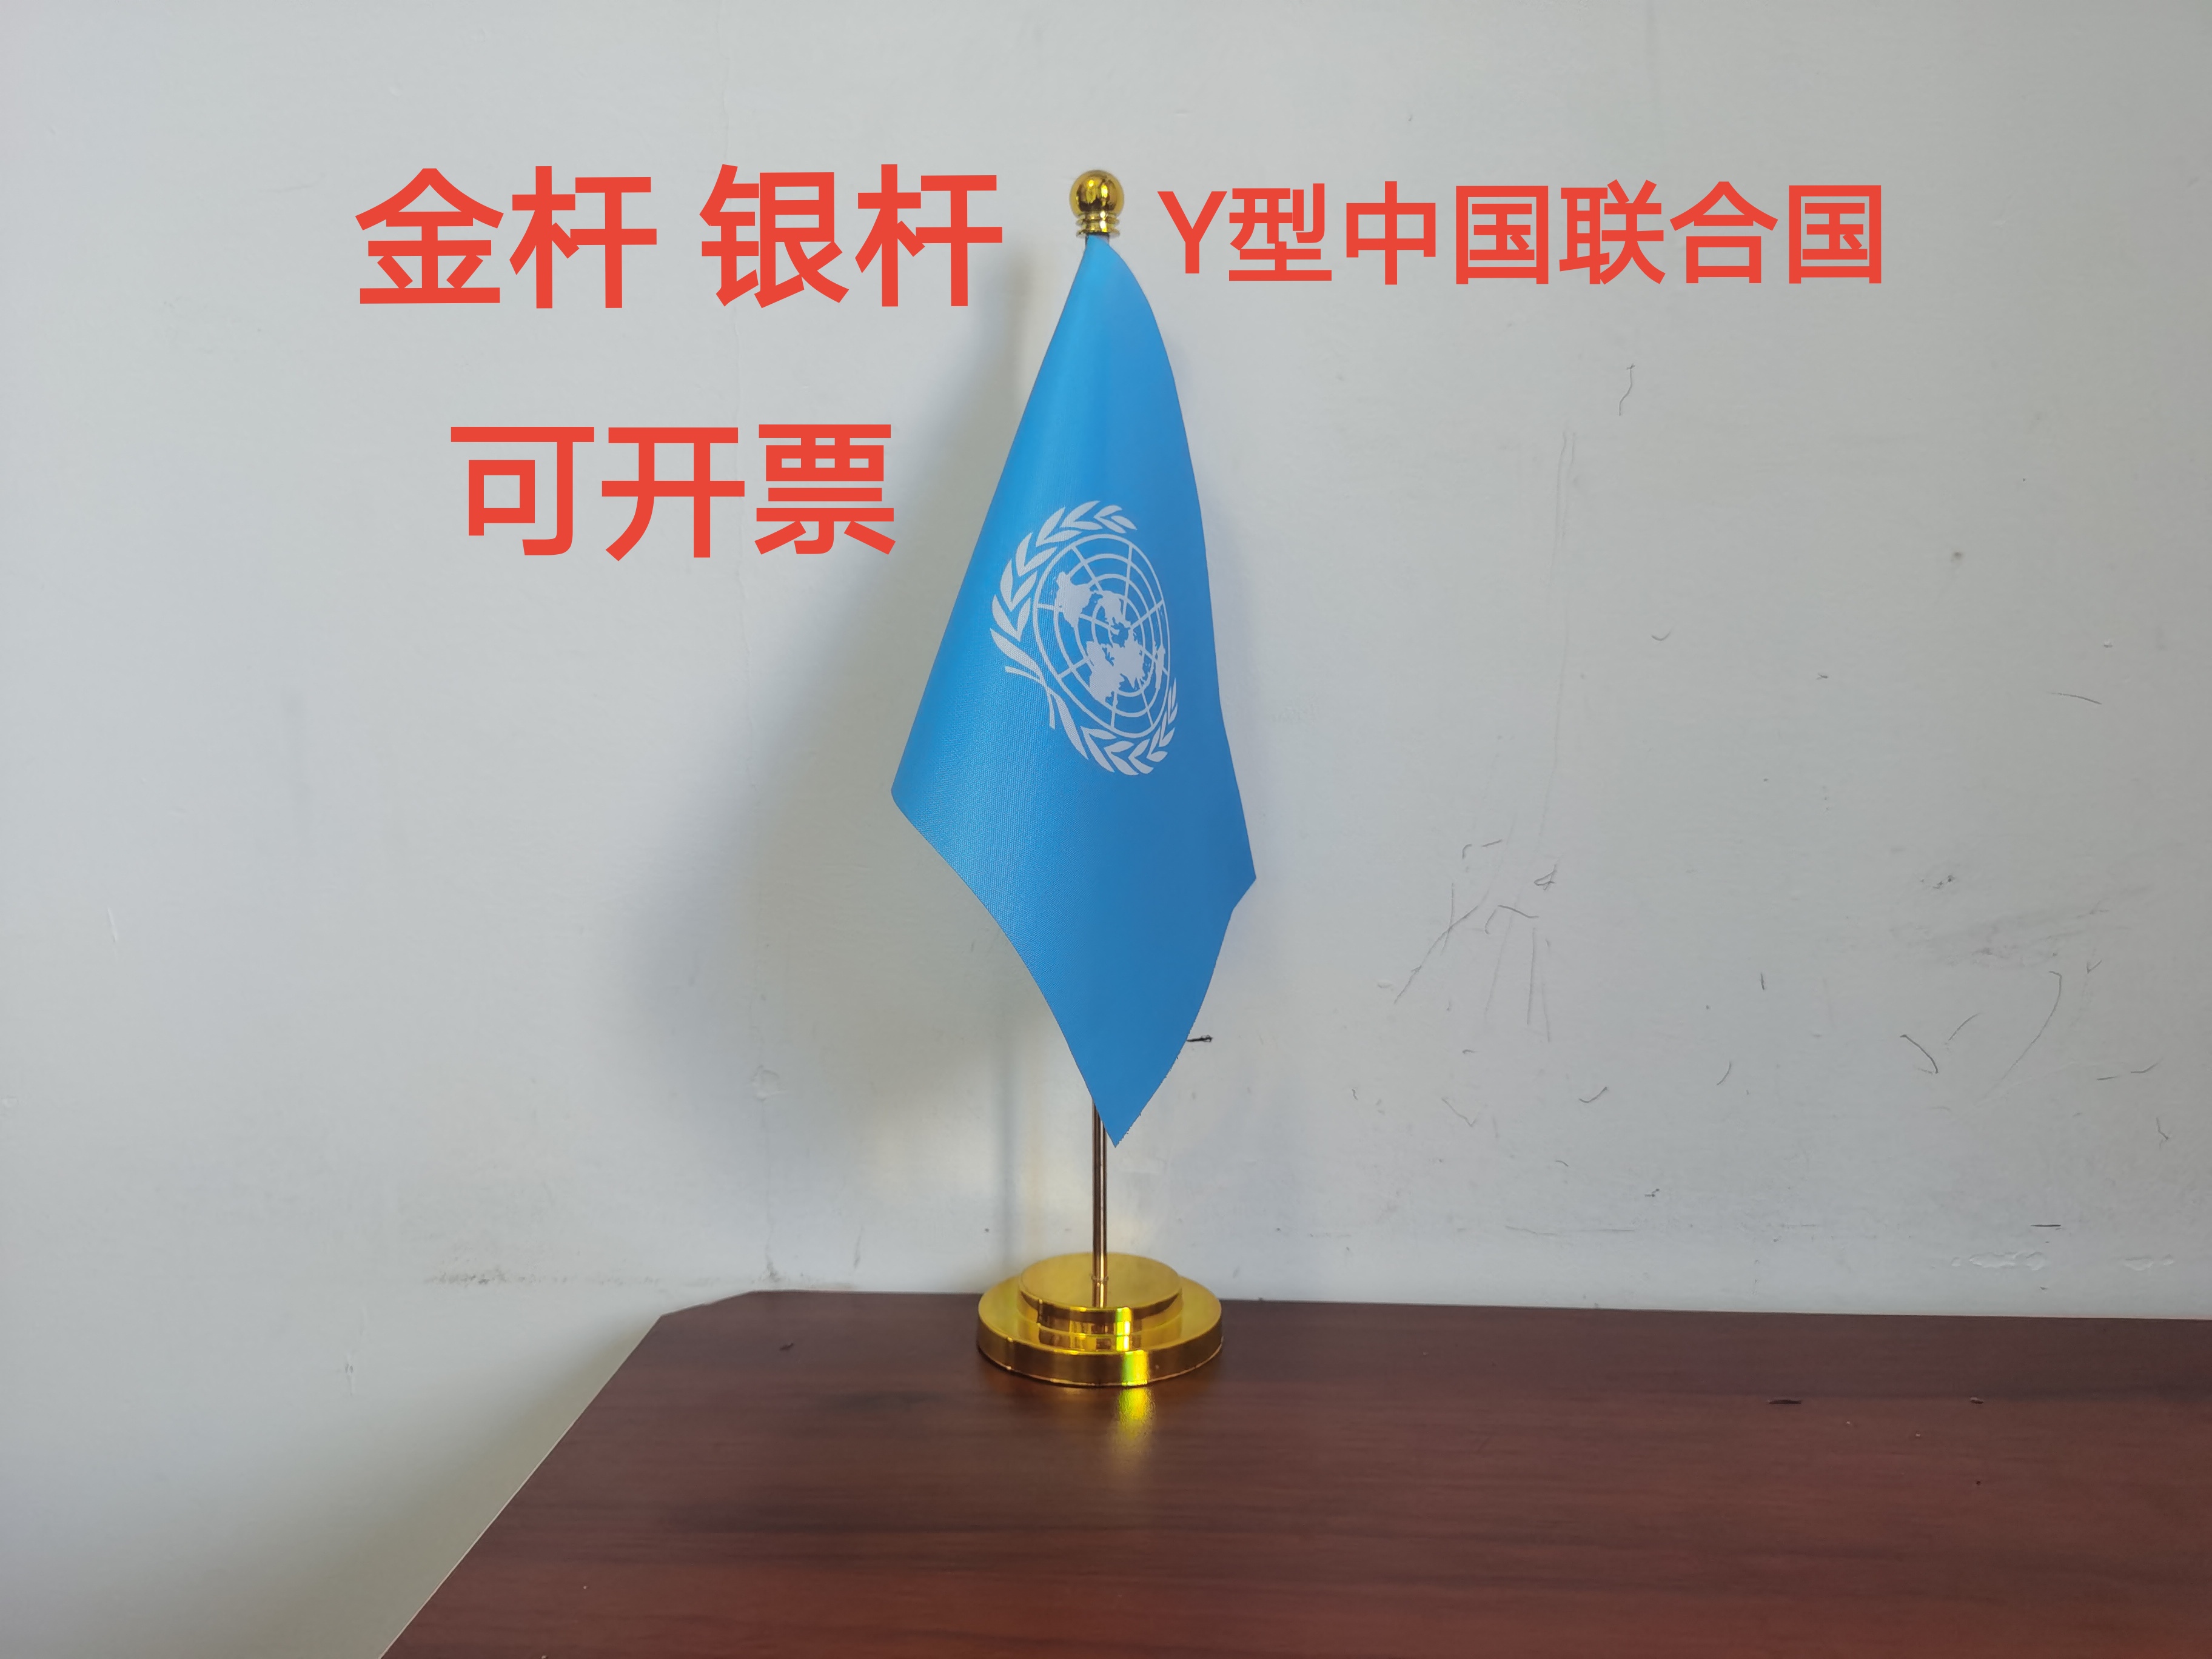 联合国国旗联合国旗帜桌面摆件办公室办公桌旗联合国小旗子小国旗